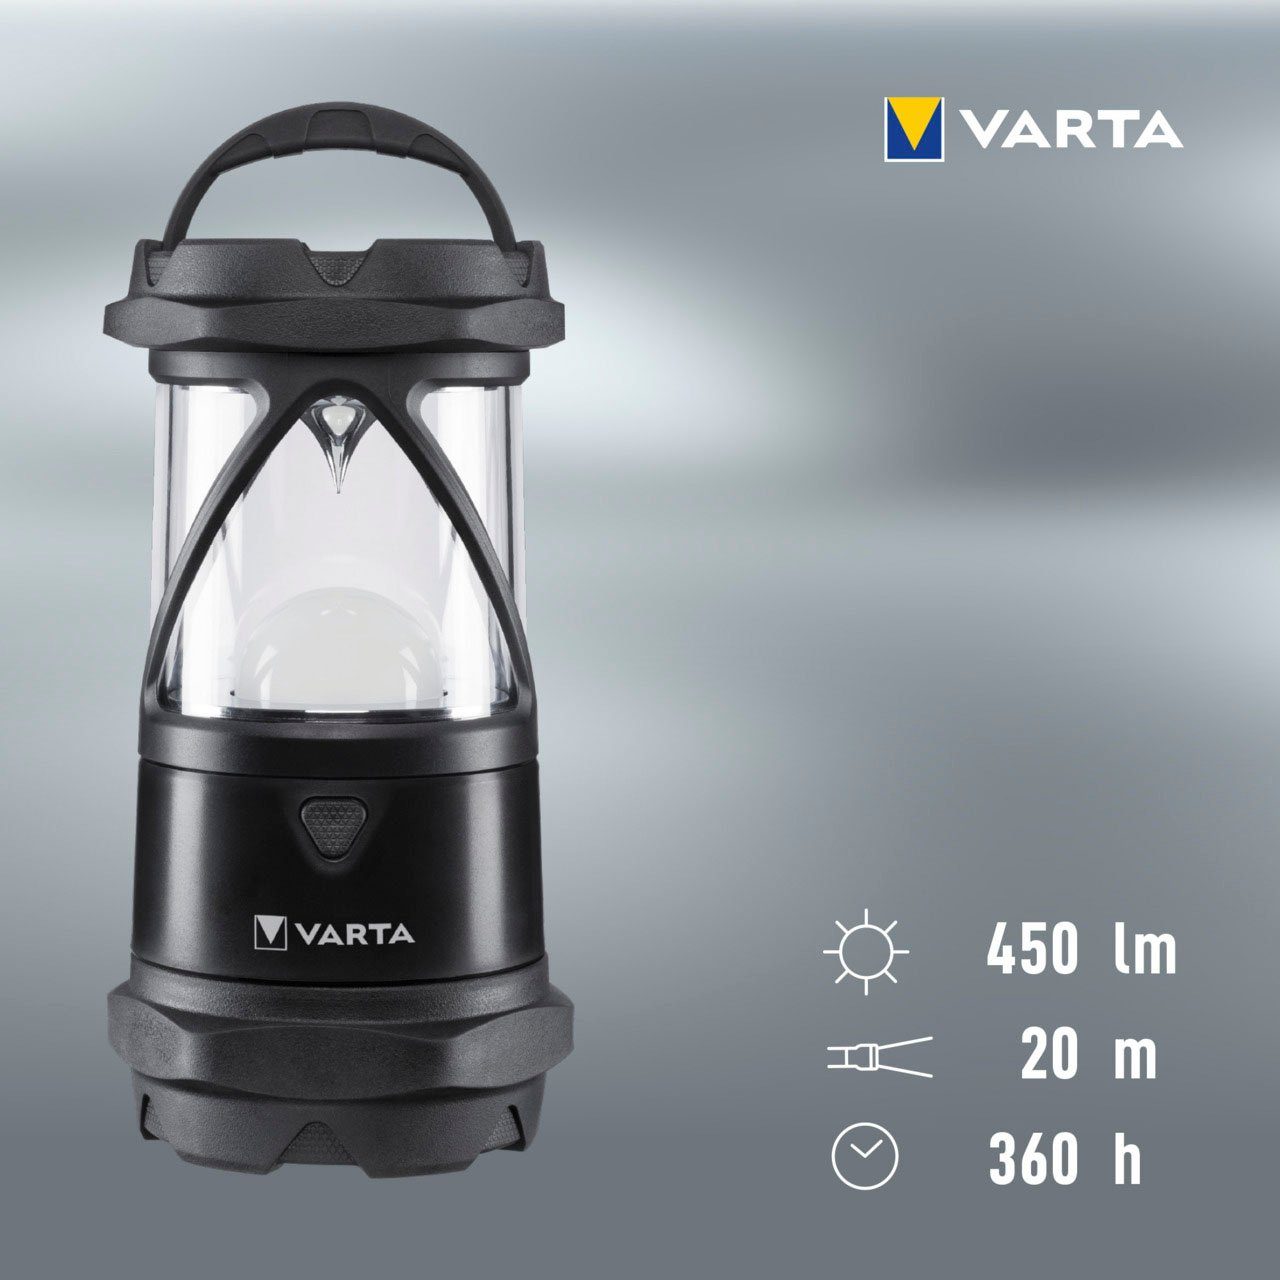 VARTA Laterne Indestructible staubdicht,stoßabsorbierend,bruchfeste und Reflektor LED, wasser- Pro Linse und L30 COB